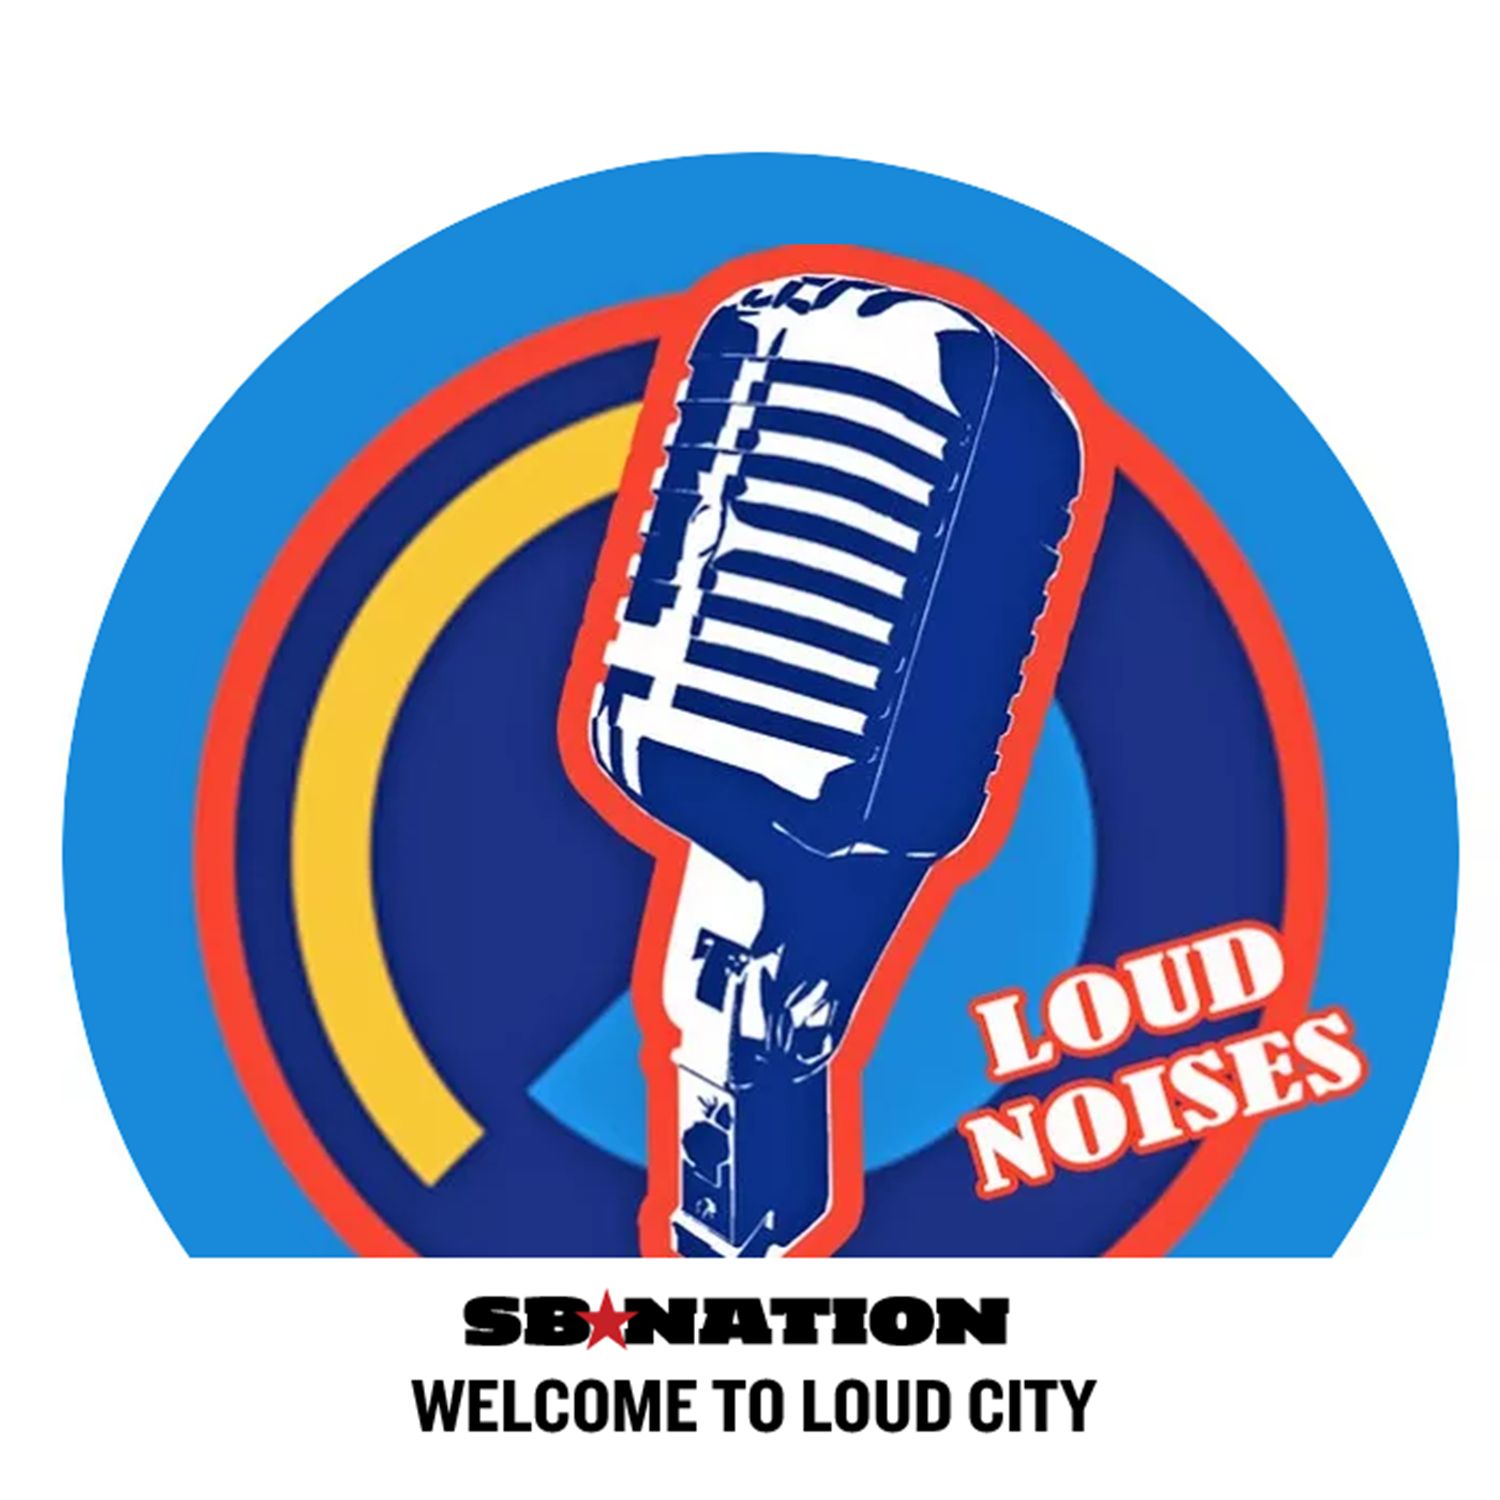 Loud Noises Episode 40